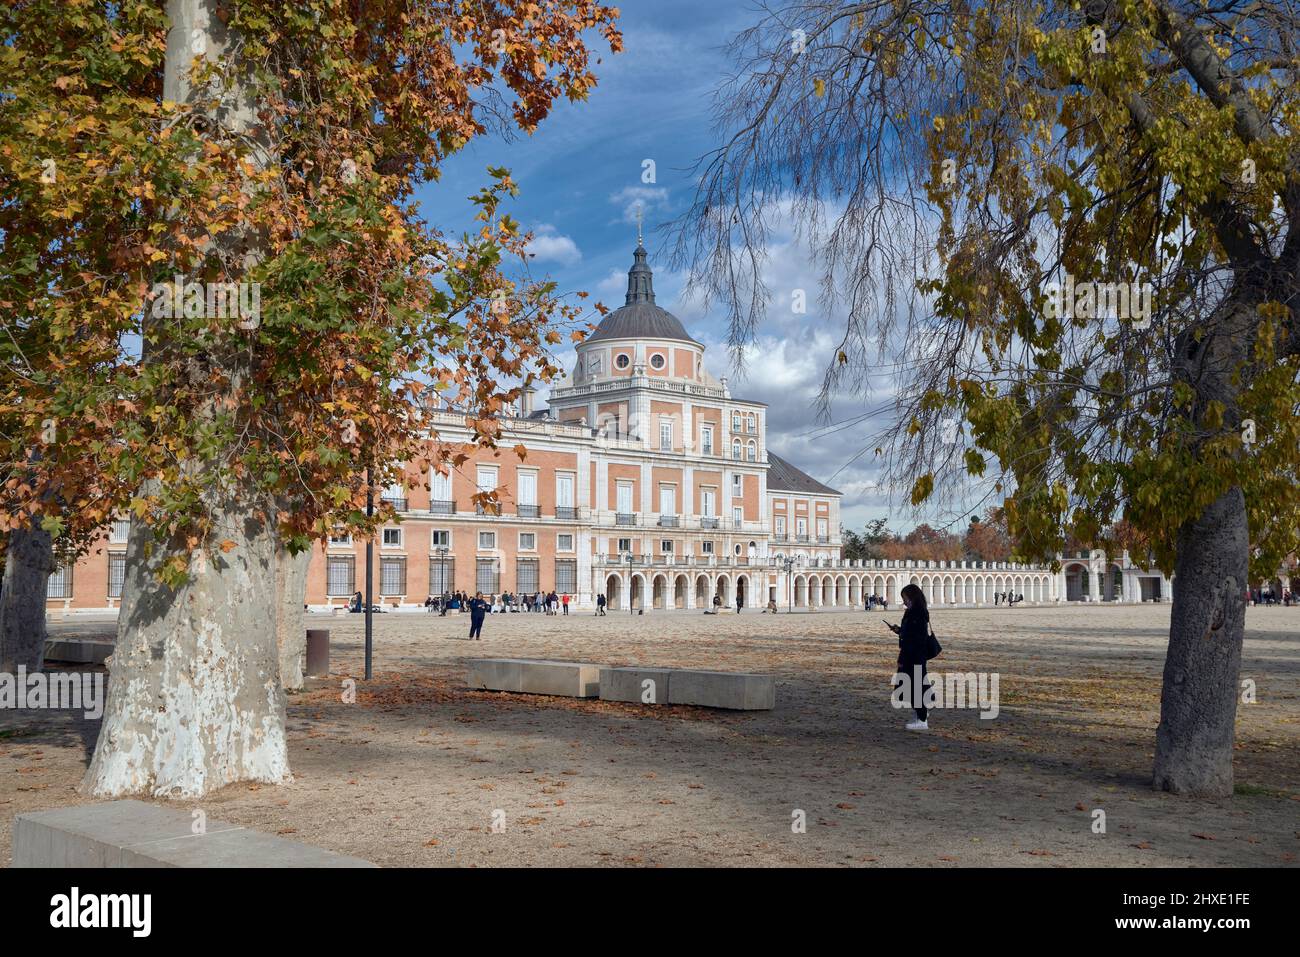 Plaza de Parejas dans le Palais Royal de la ville d'Aranjuez, Madrid, Espagne, Europe Banque D'Images